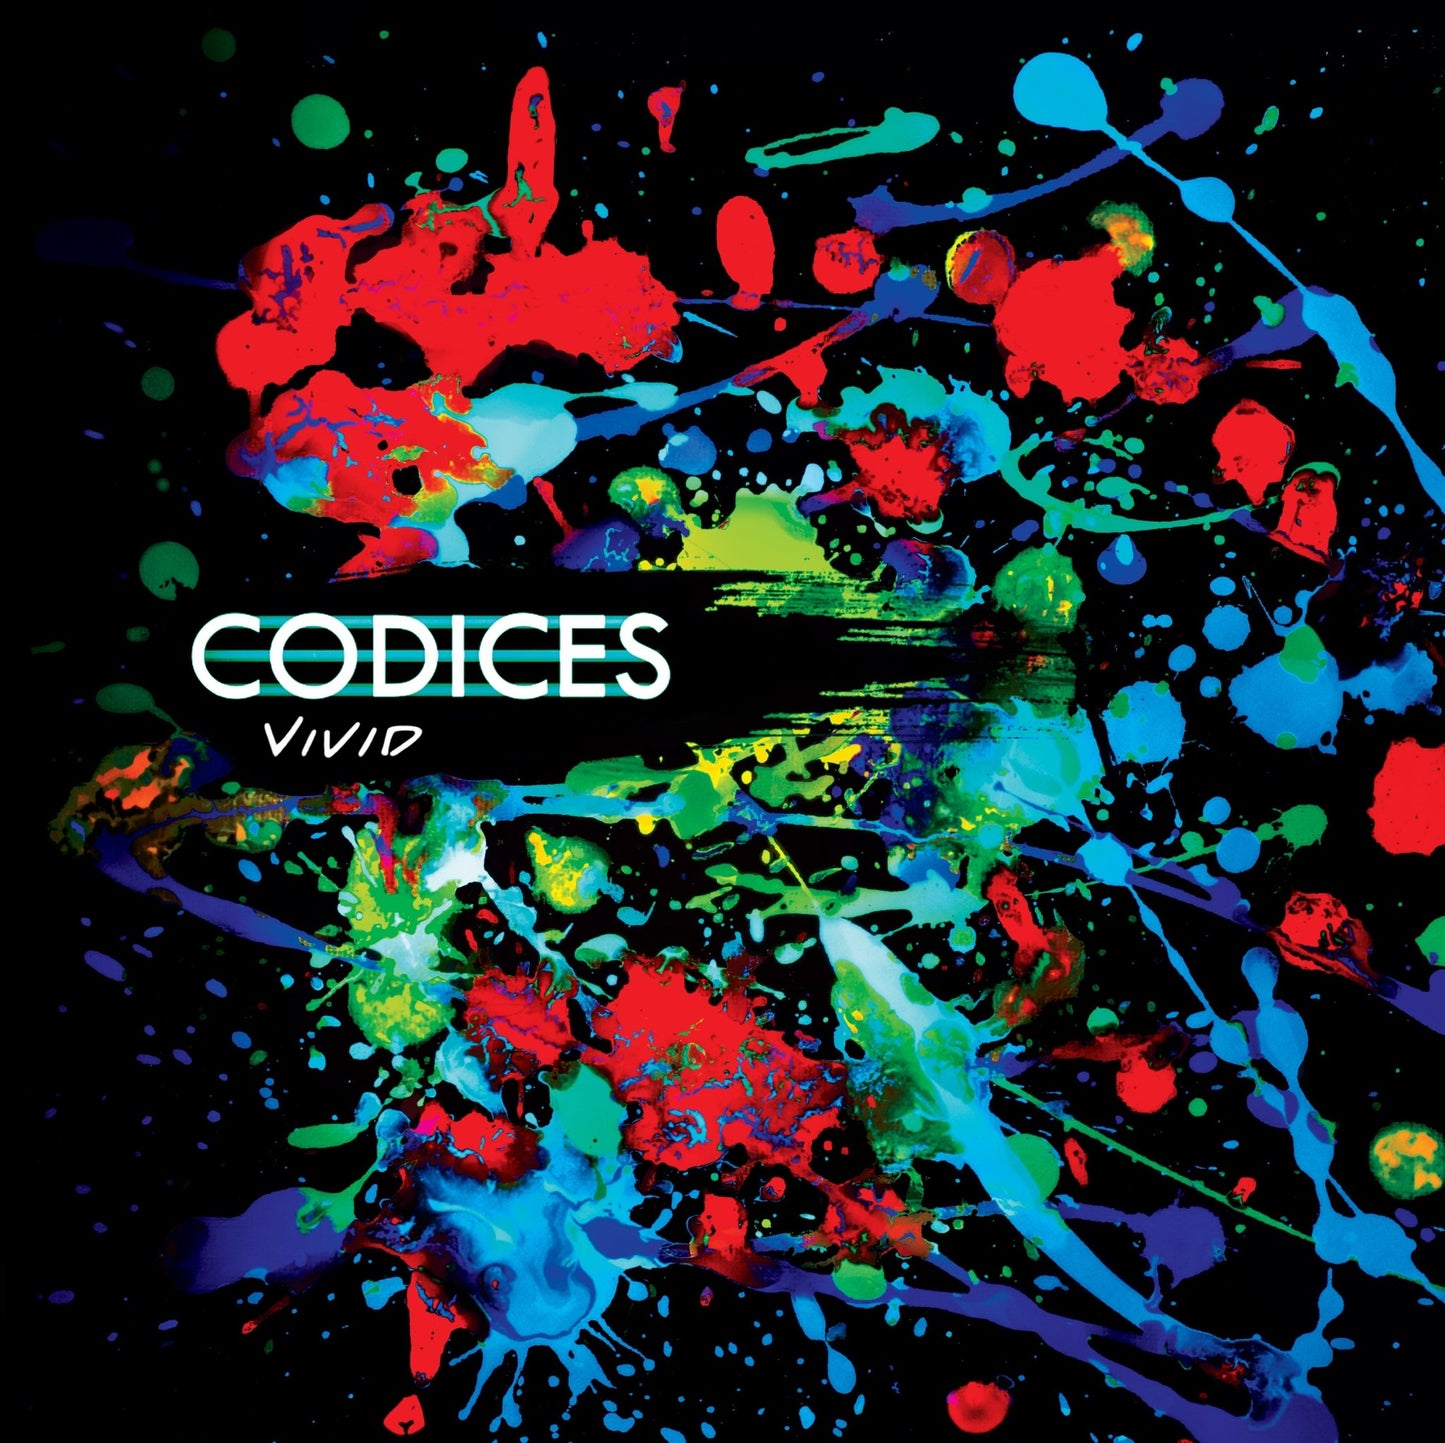 Codices - "Vivid" - Acrobat Unstable Records